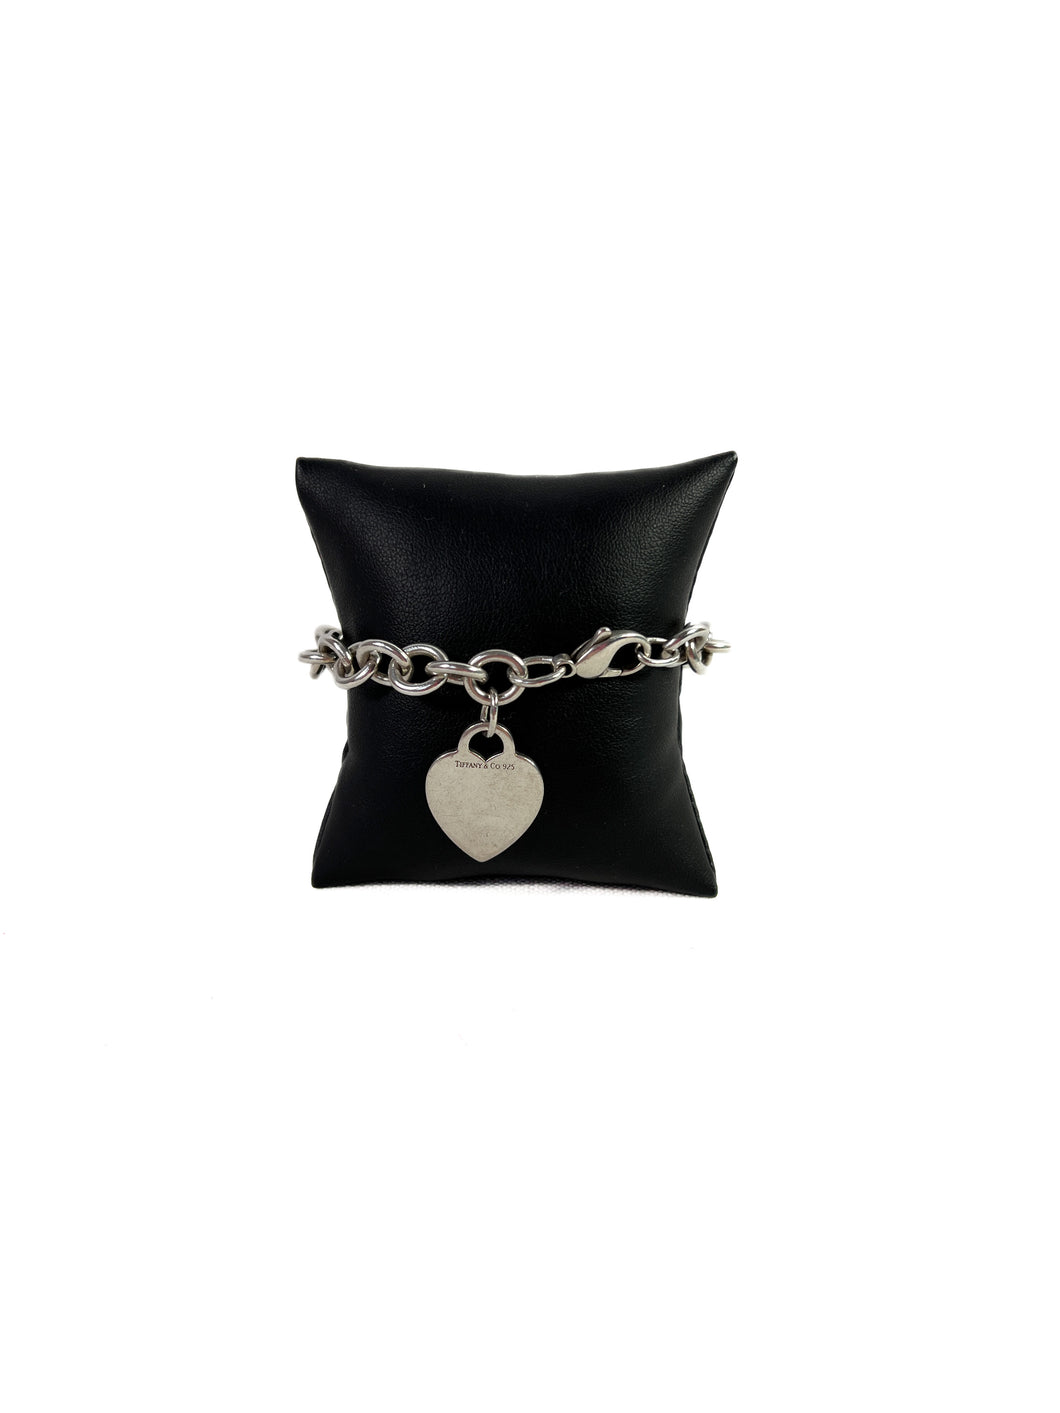 Tiffany & Co heart charm sterling silver bracelet